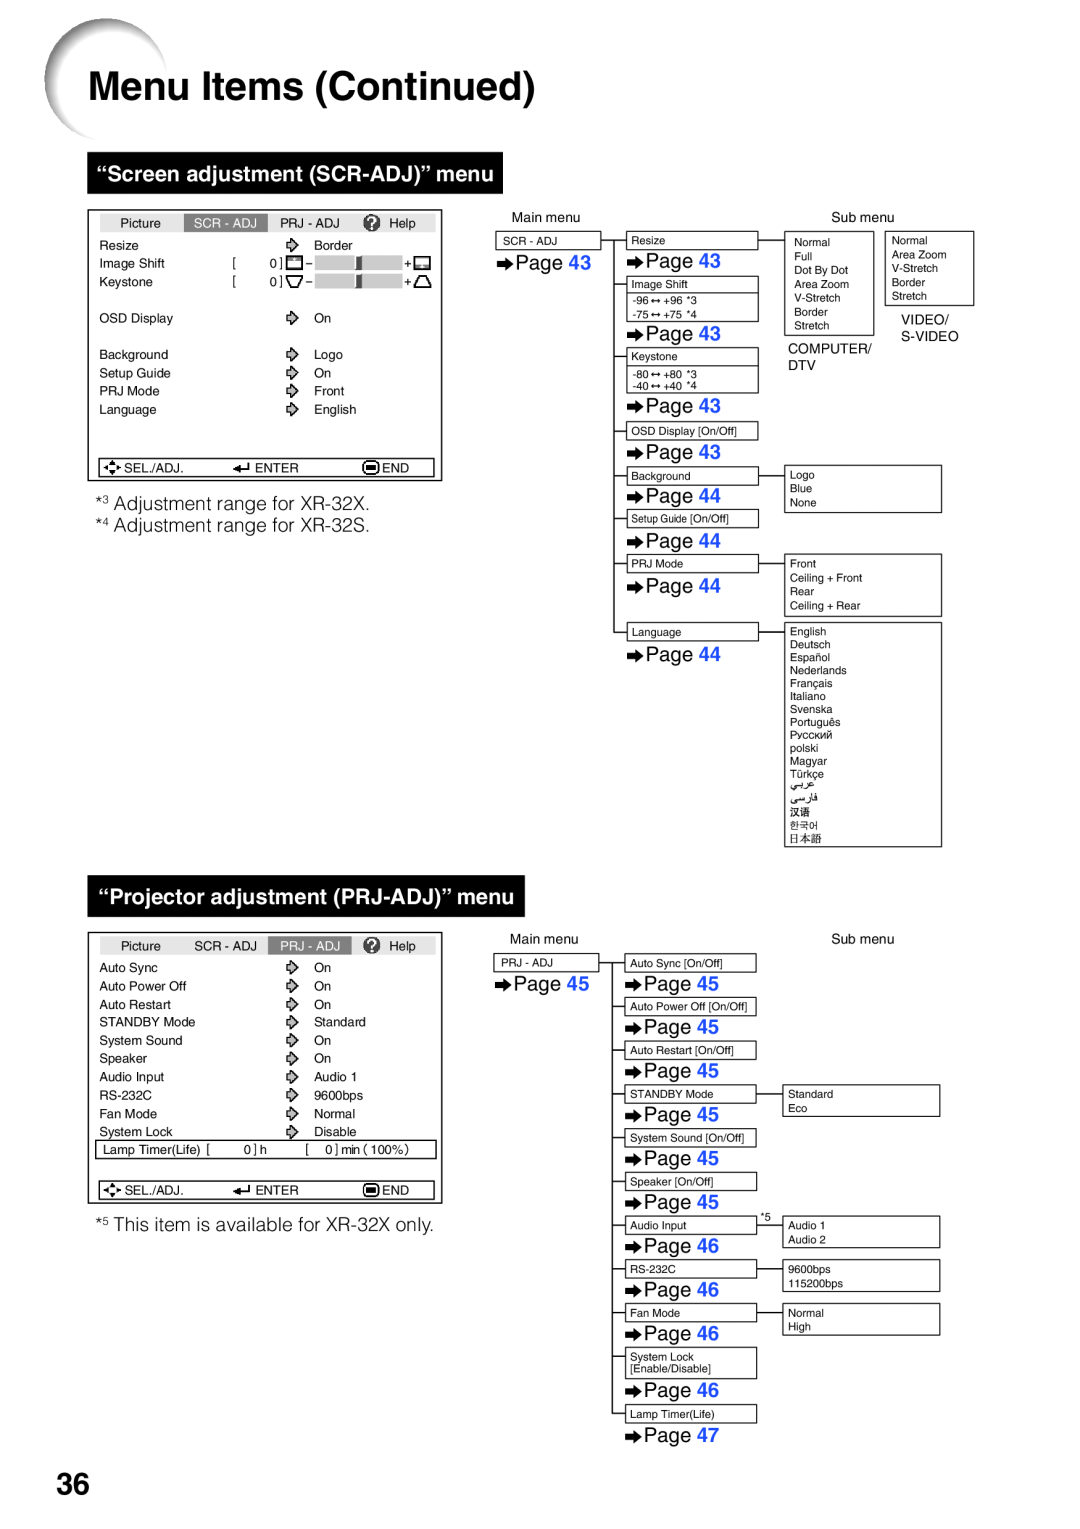 Sharp XR-32X-L, XR-32S-L Menu Items Continued, “Screen adjustment SCR-ADJ” menu, “Projector adjustment PRJ-ADJ” menu 